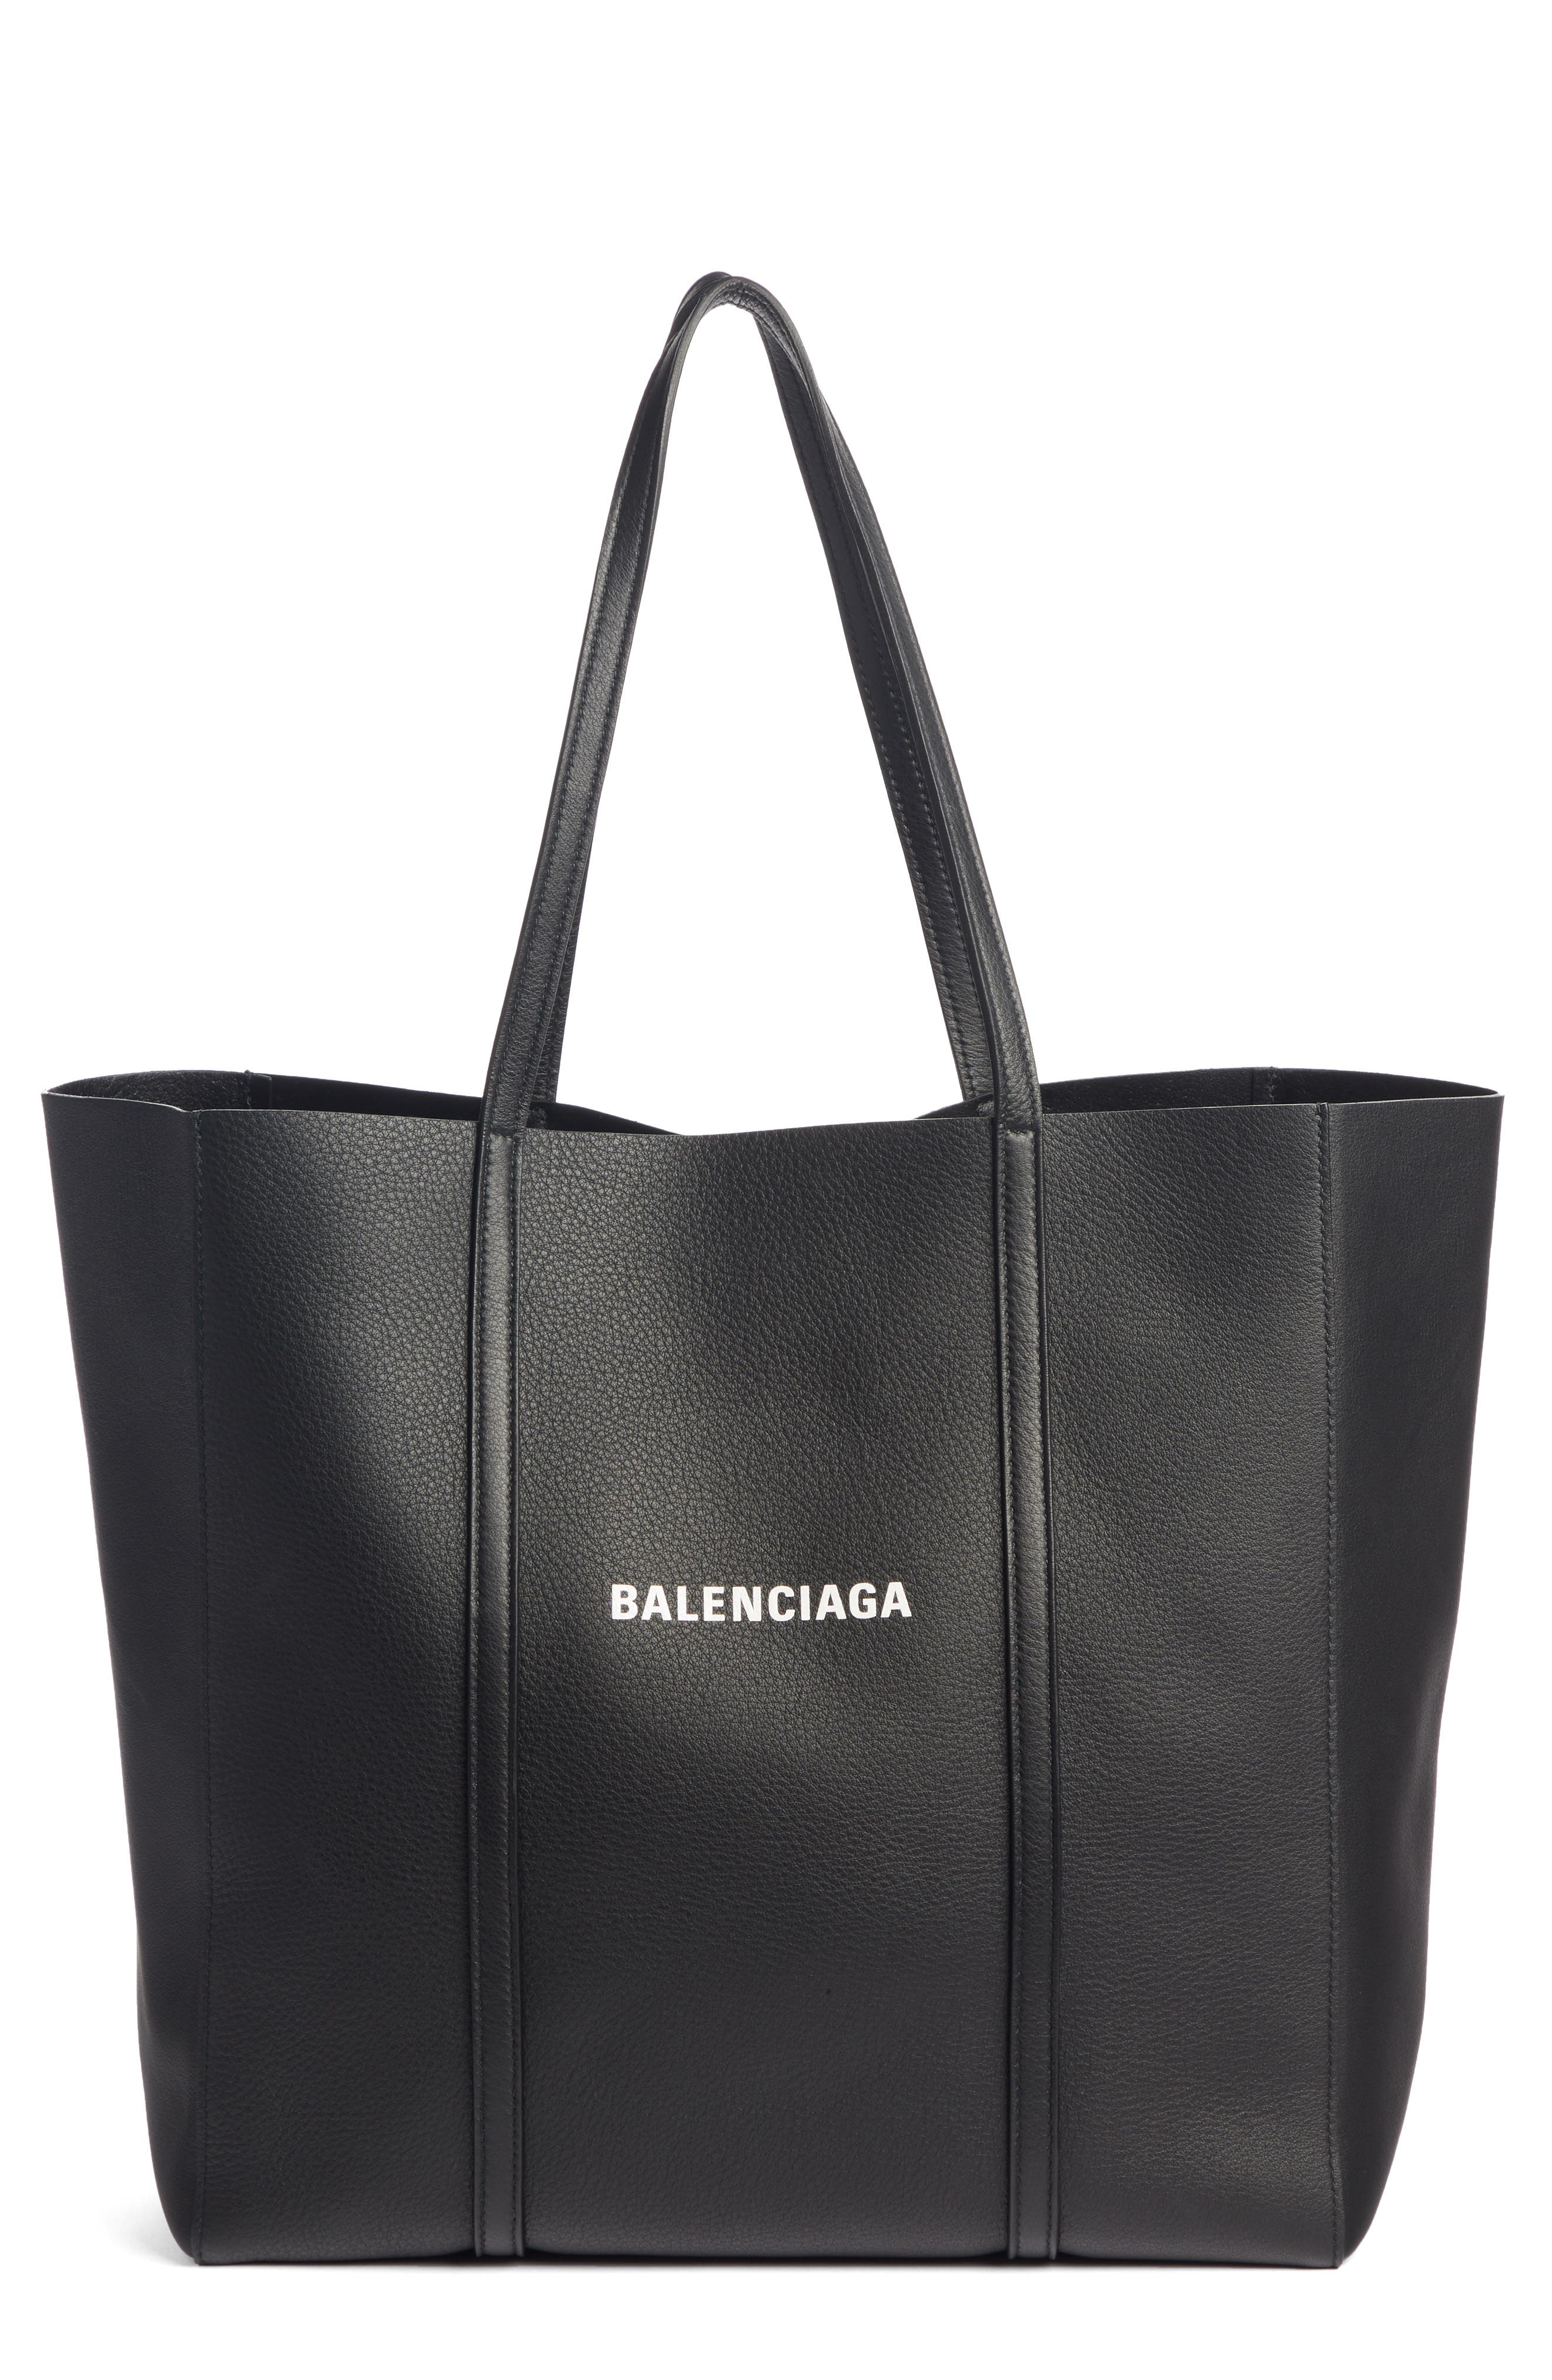 Balenciaga Tote Bags for Women | Nordstrom